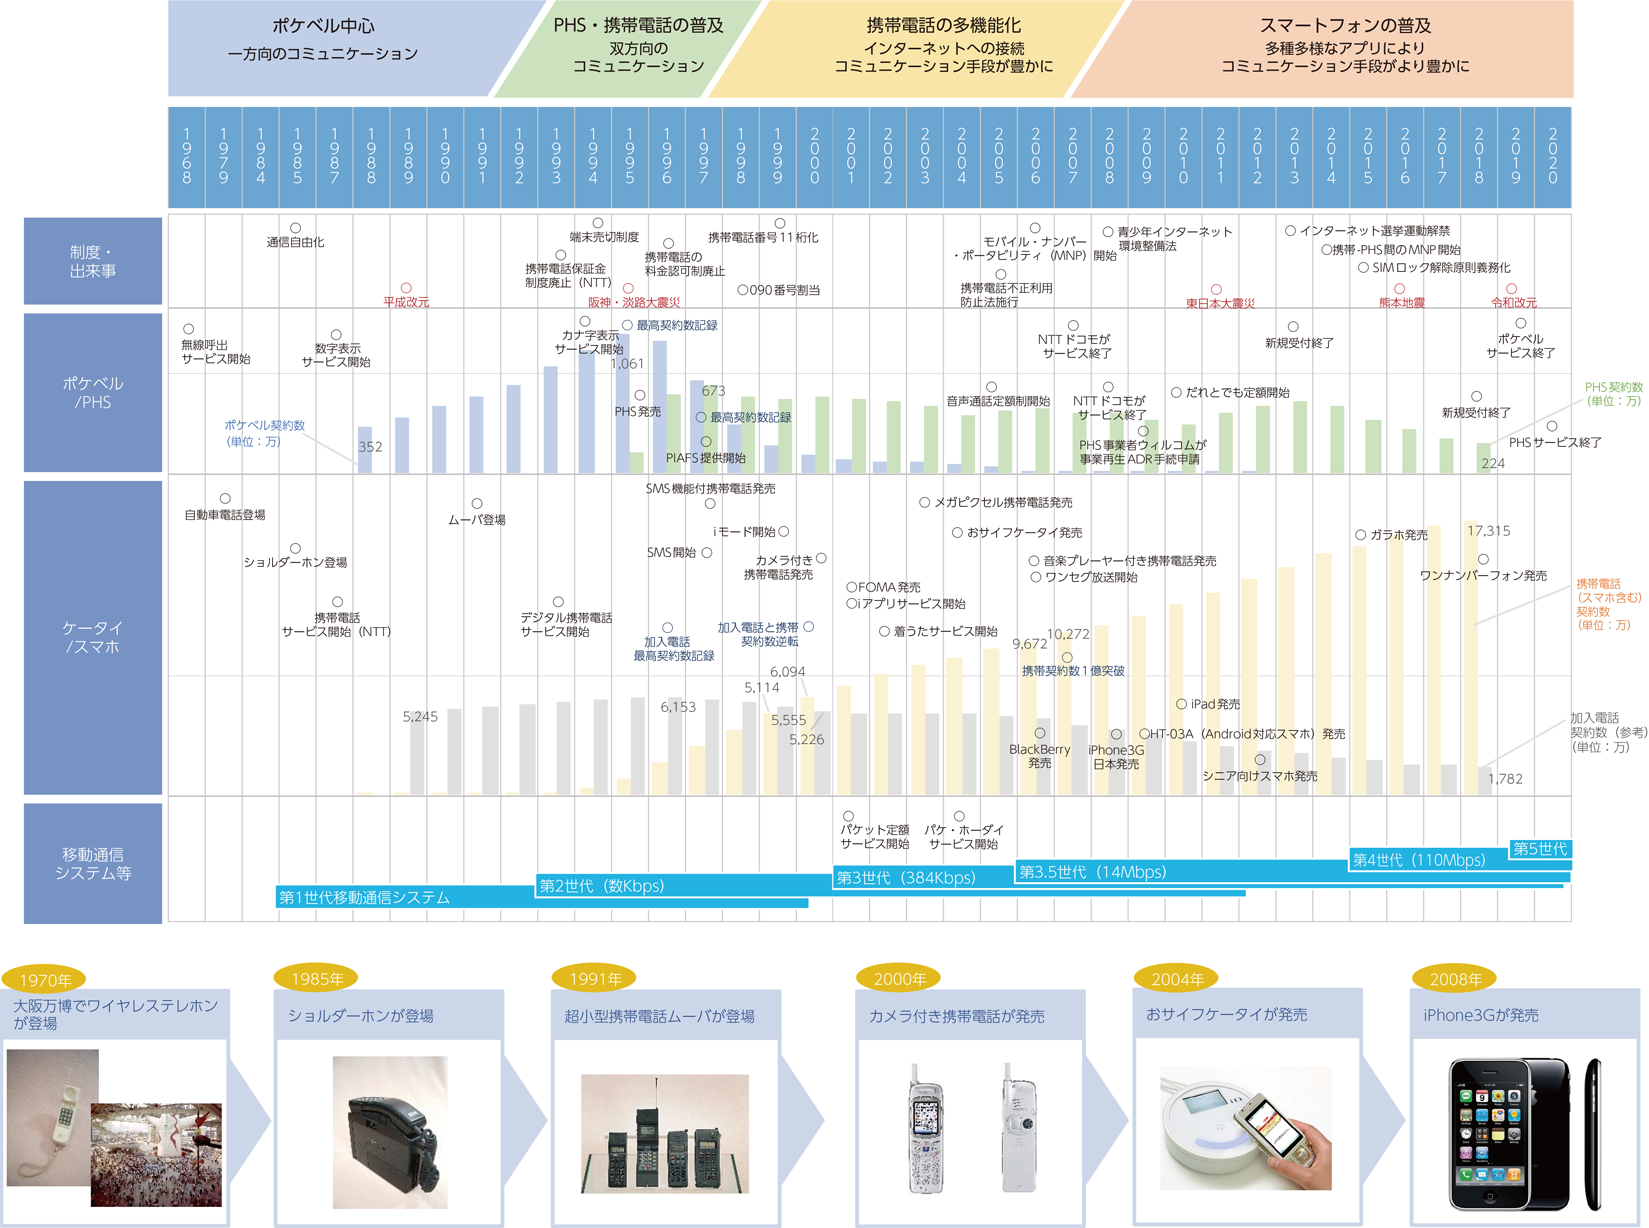 図表1-1-1-1　移動通信サービスの普及と進化